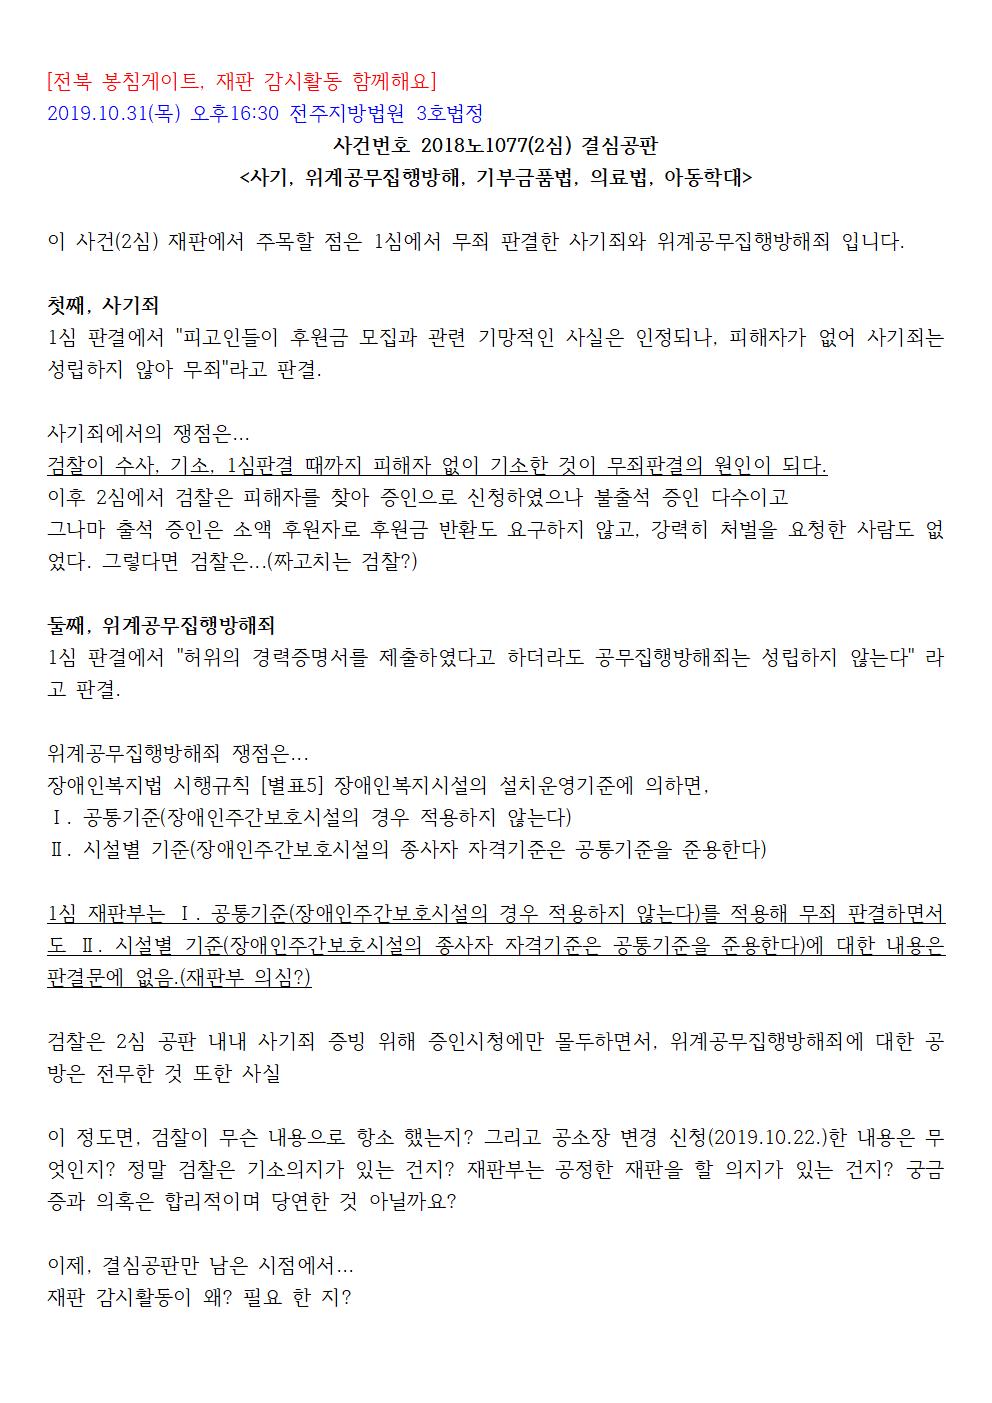 19.10.31_전북 봉침게이트 재판(2018노1077) 감시 받아야001.jpg